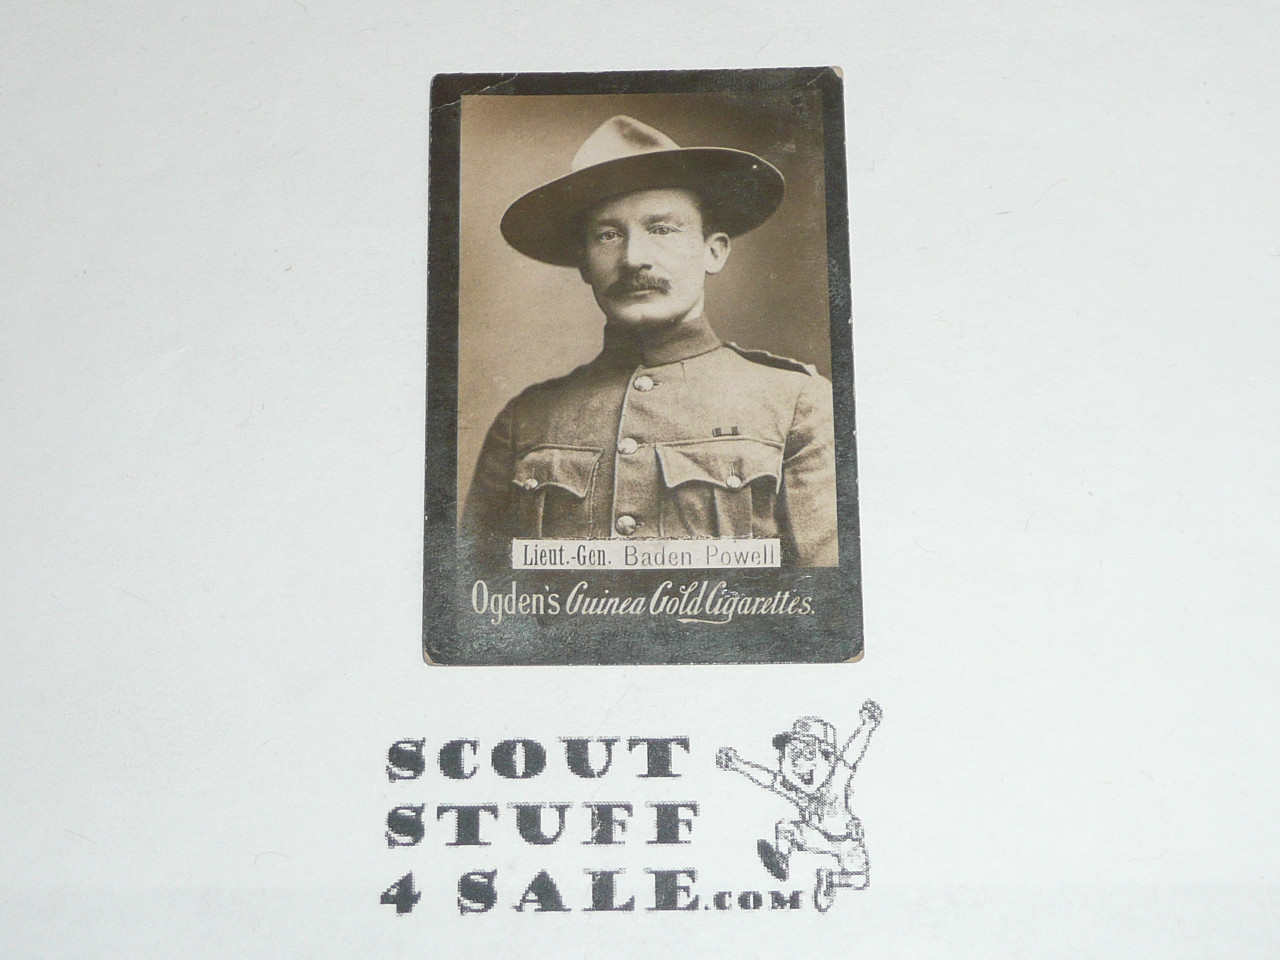 Ogden's Guinea Gold Cigarettes, Lieut.-Gen Baden Powell, minimal wear